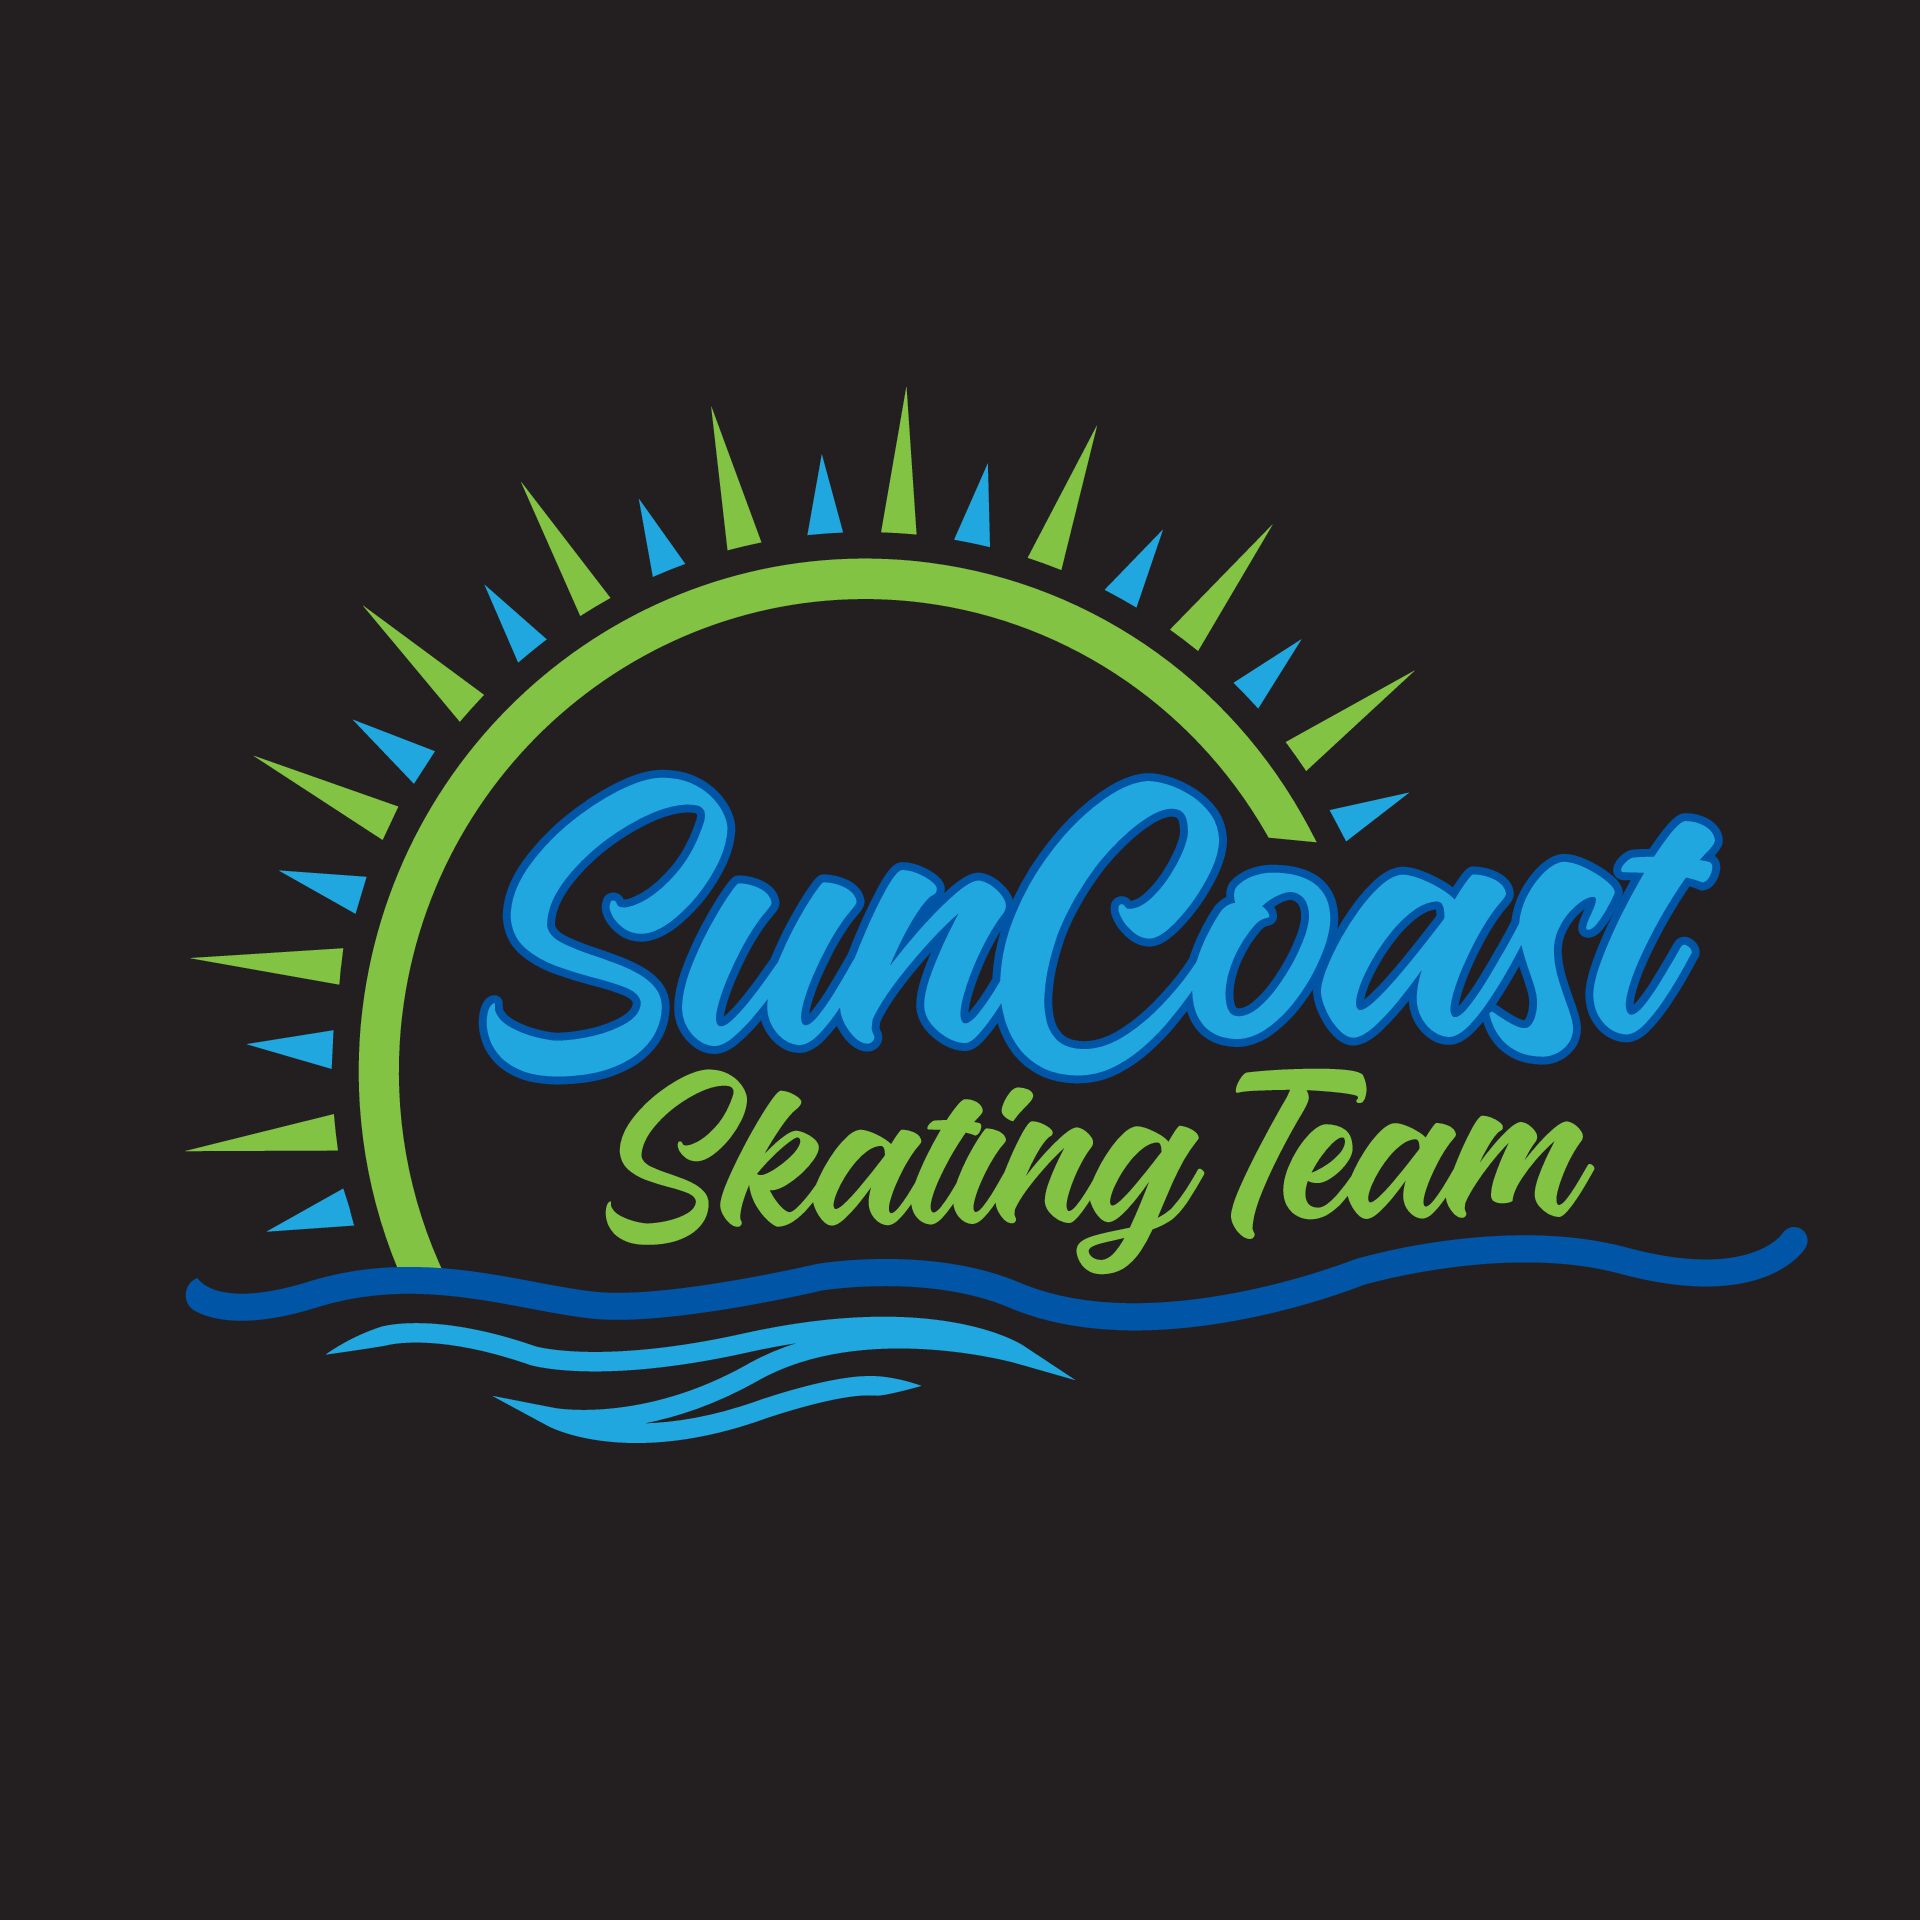 SunCoast Skating